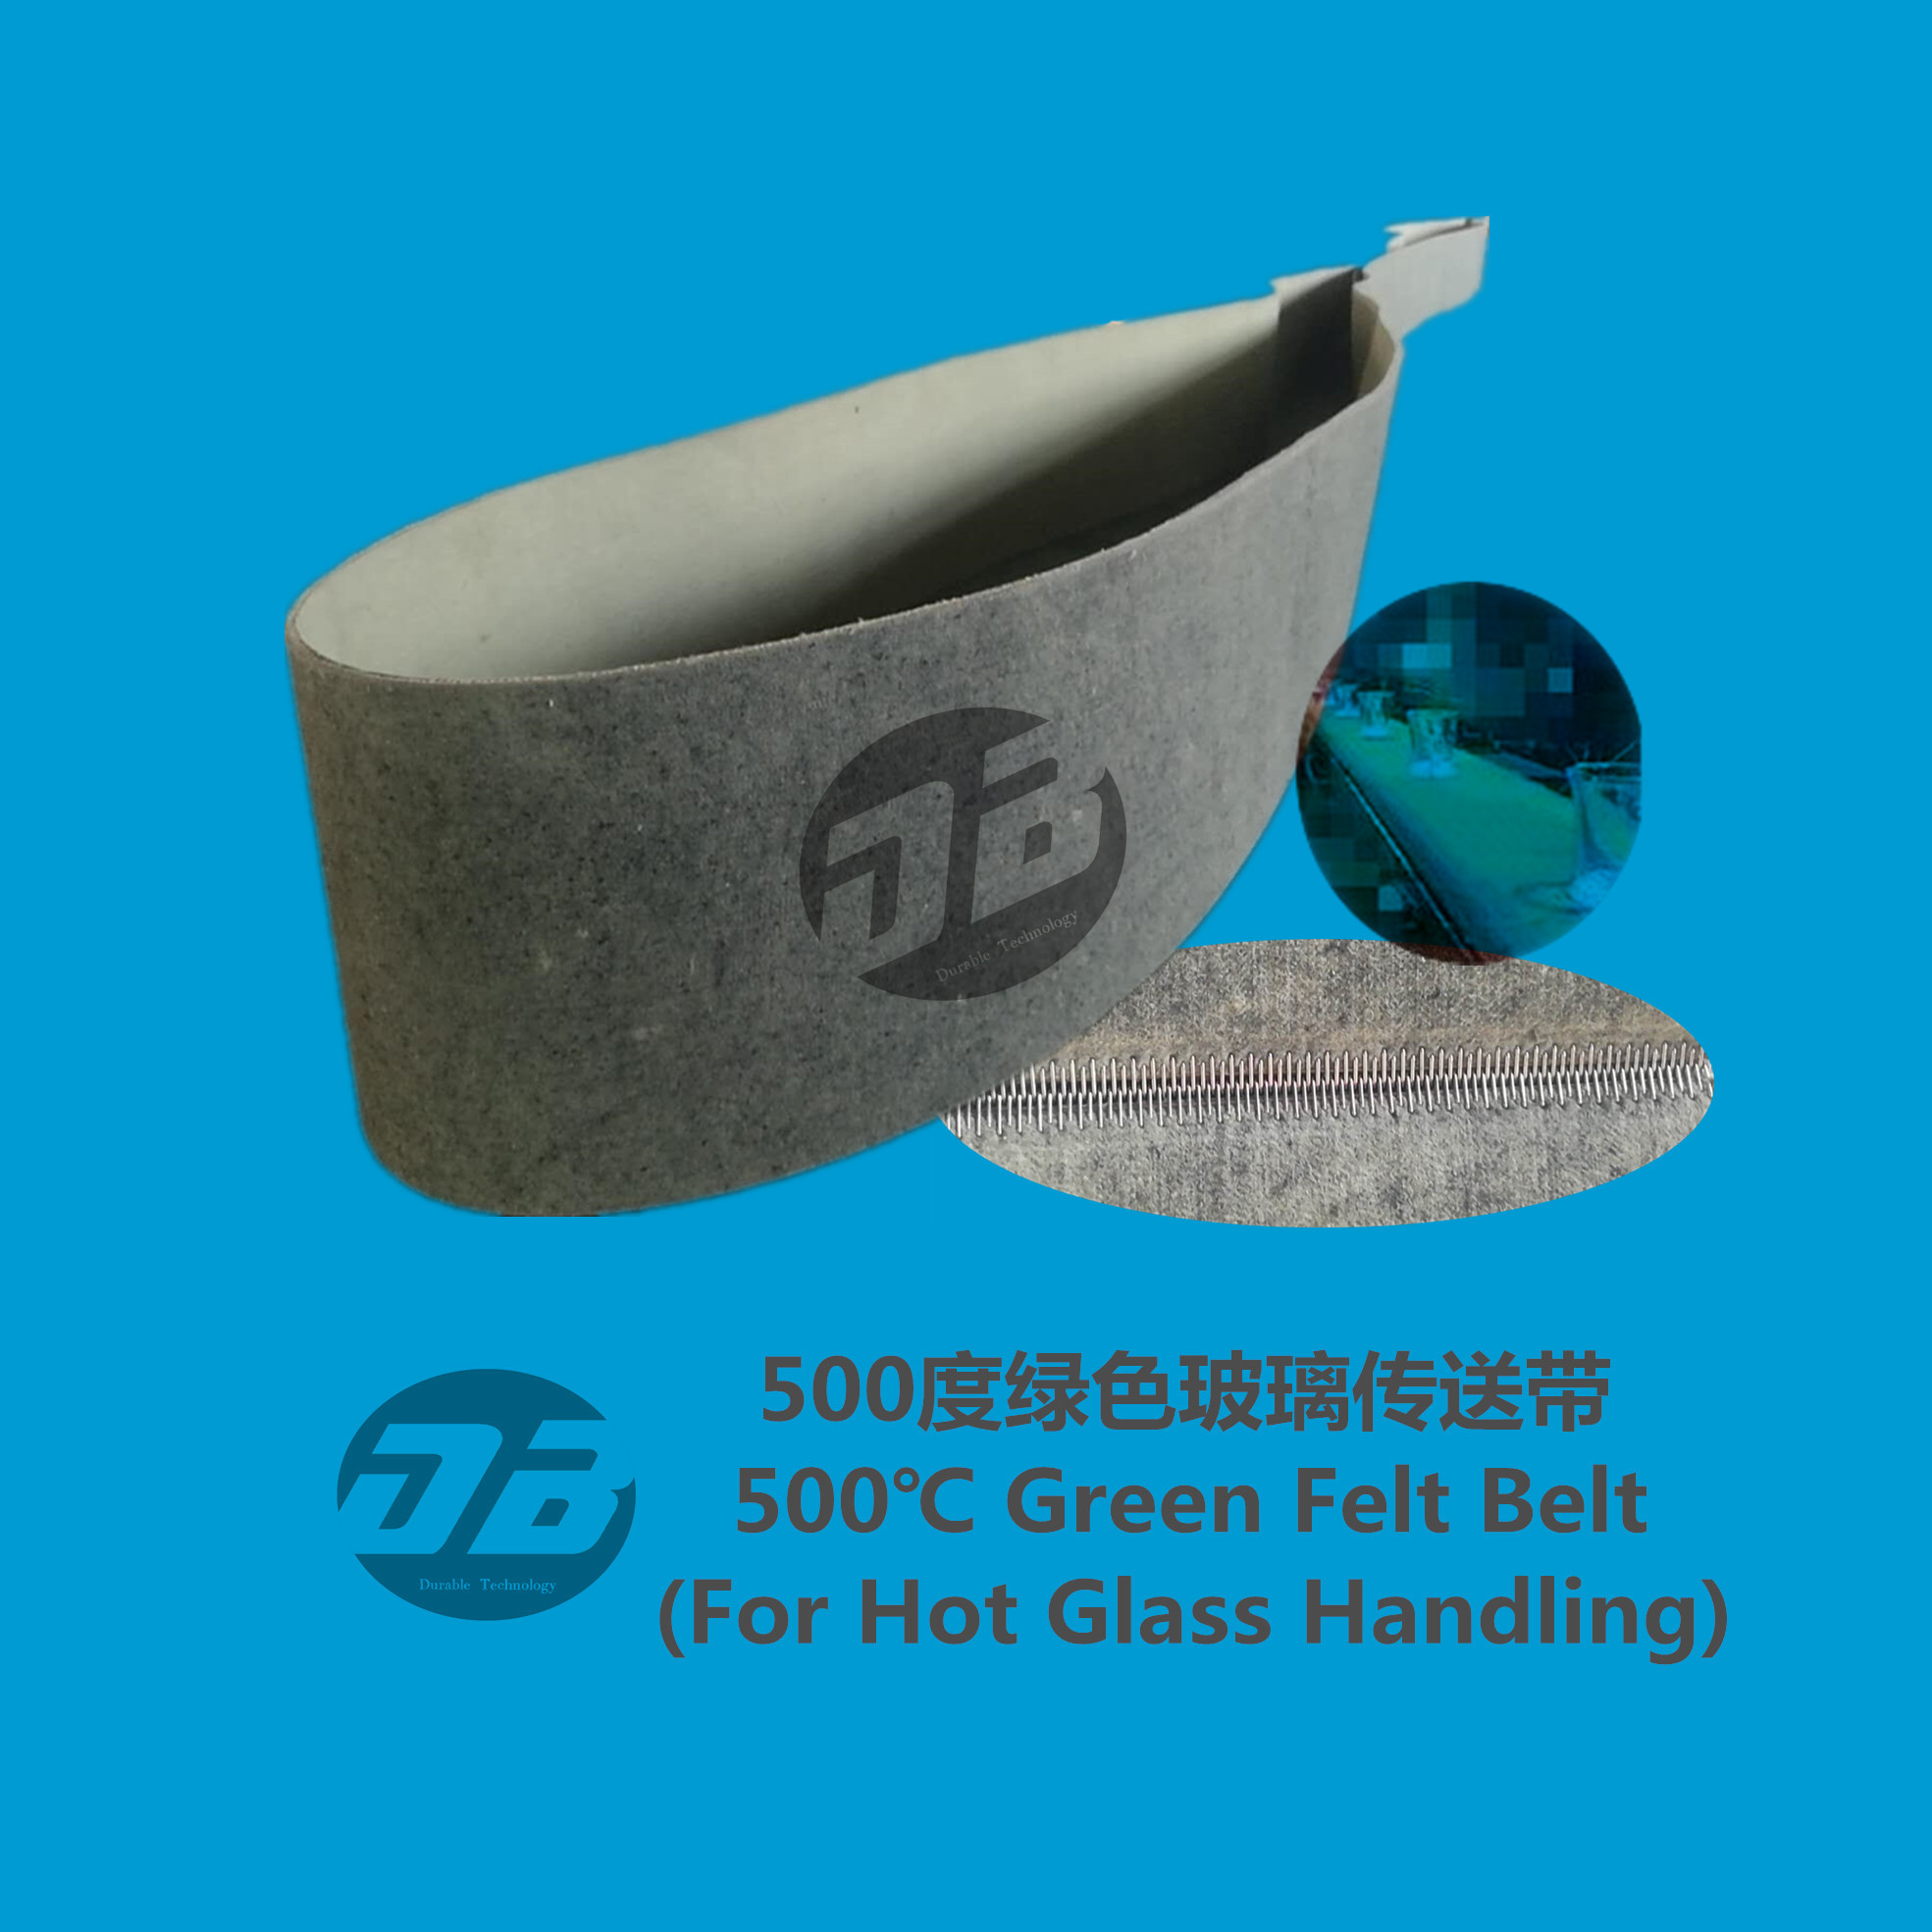 500℃ Green Belt Belt